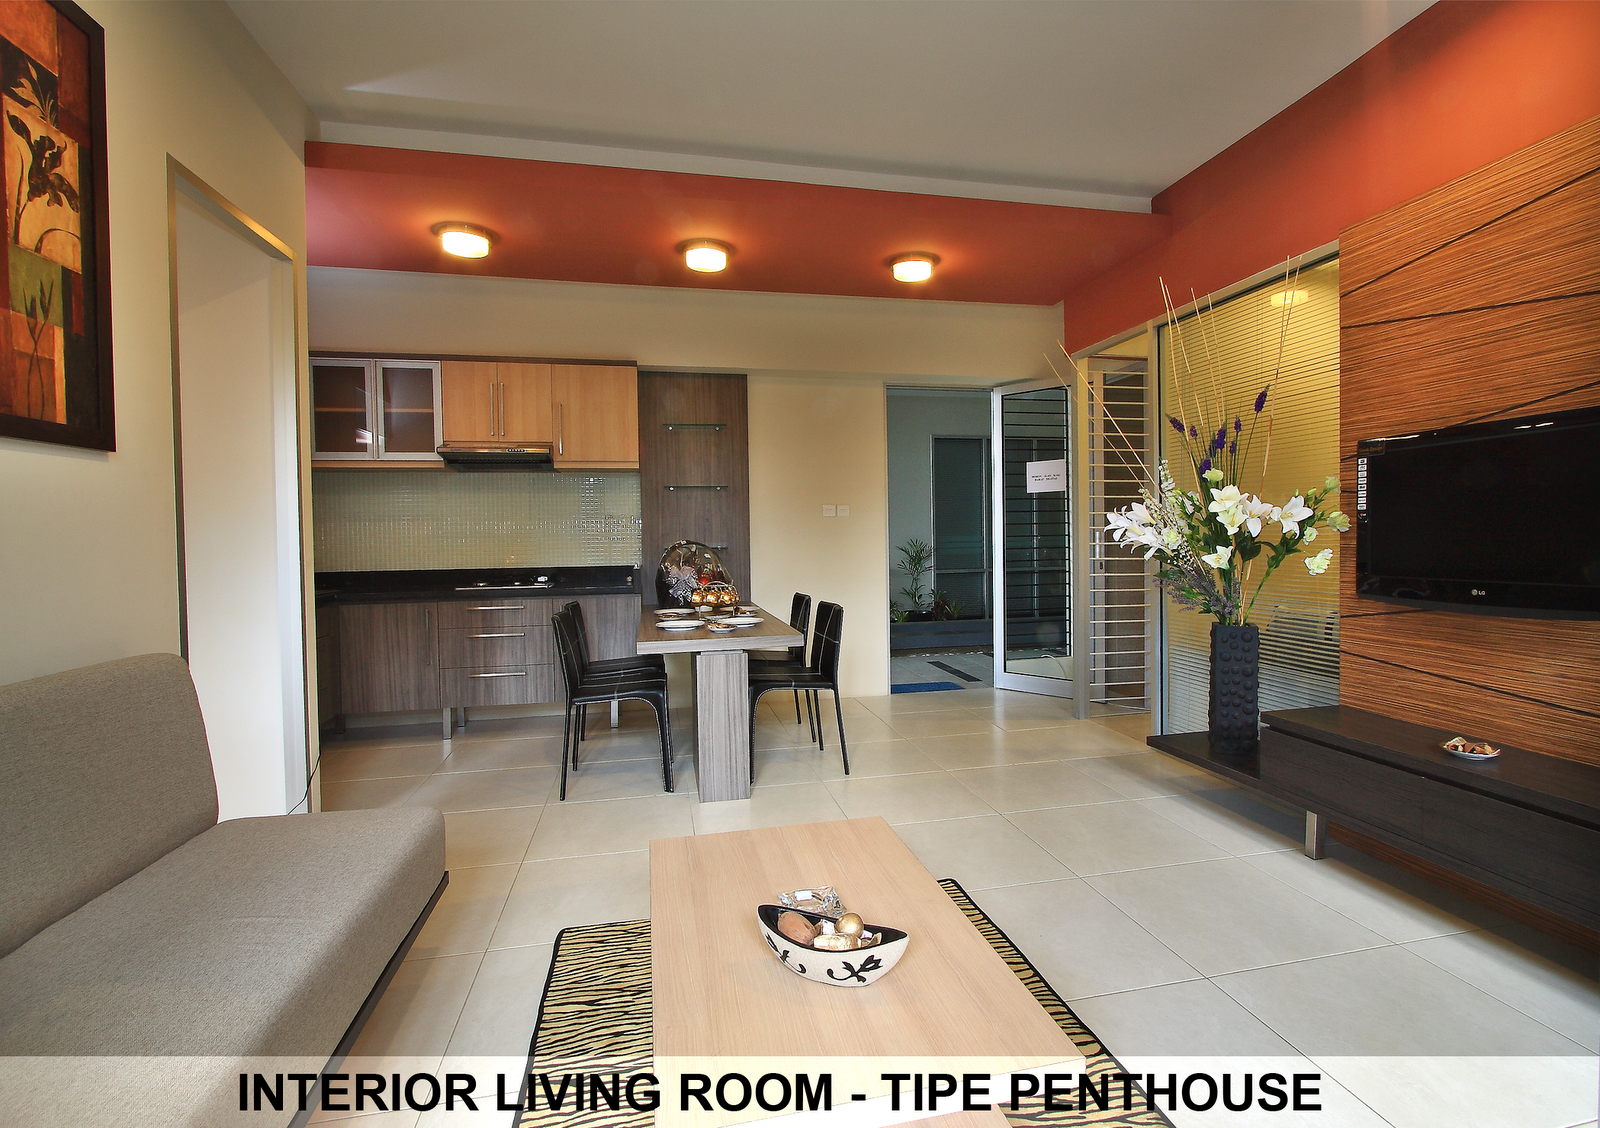 Design Interior Apartemen Tipe Studio